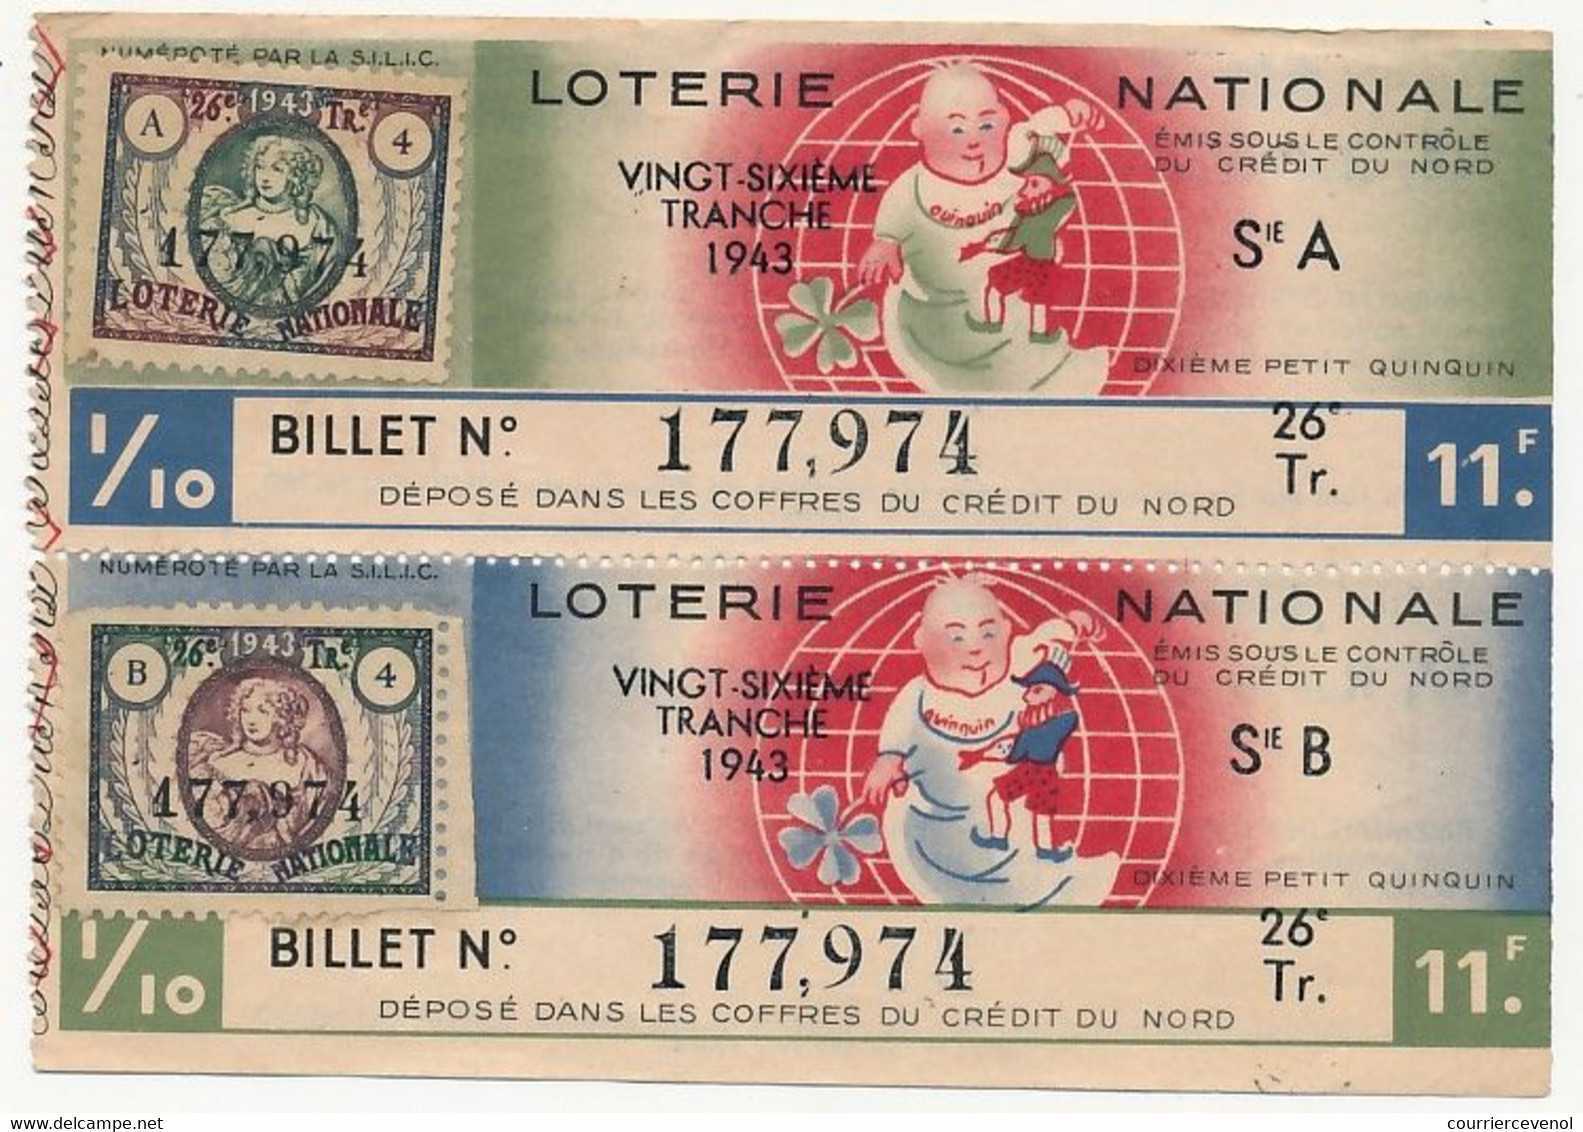 FRANCE - Loterie Nationale - 1/10ème A Et B - Crédit Du Nord - Dixième Petit Quiquin - 26eme Tranche 1943 - Billets De Loterie